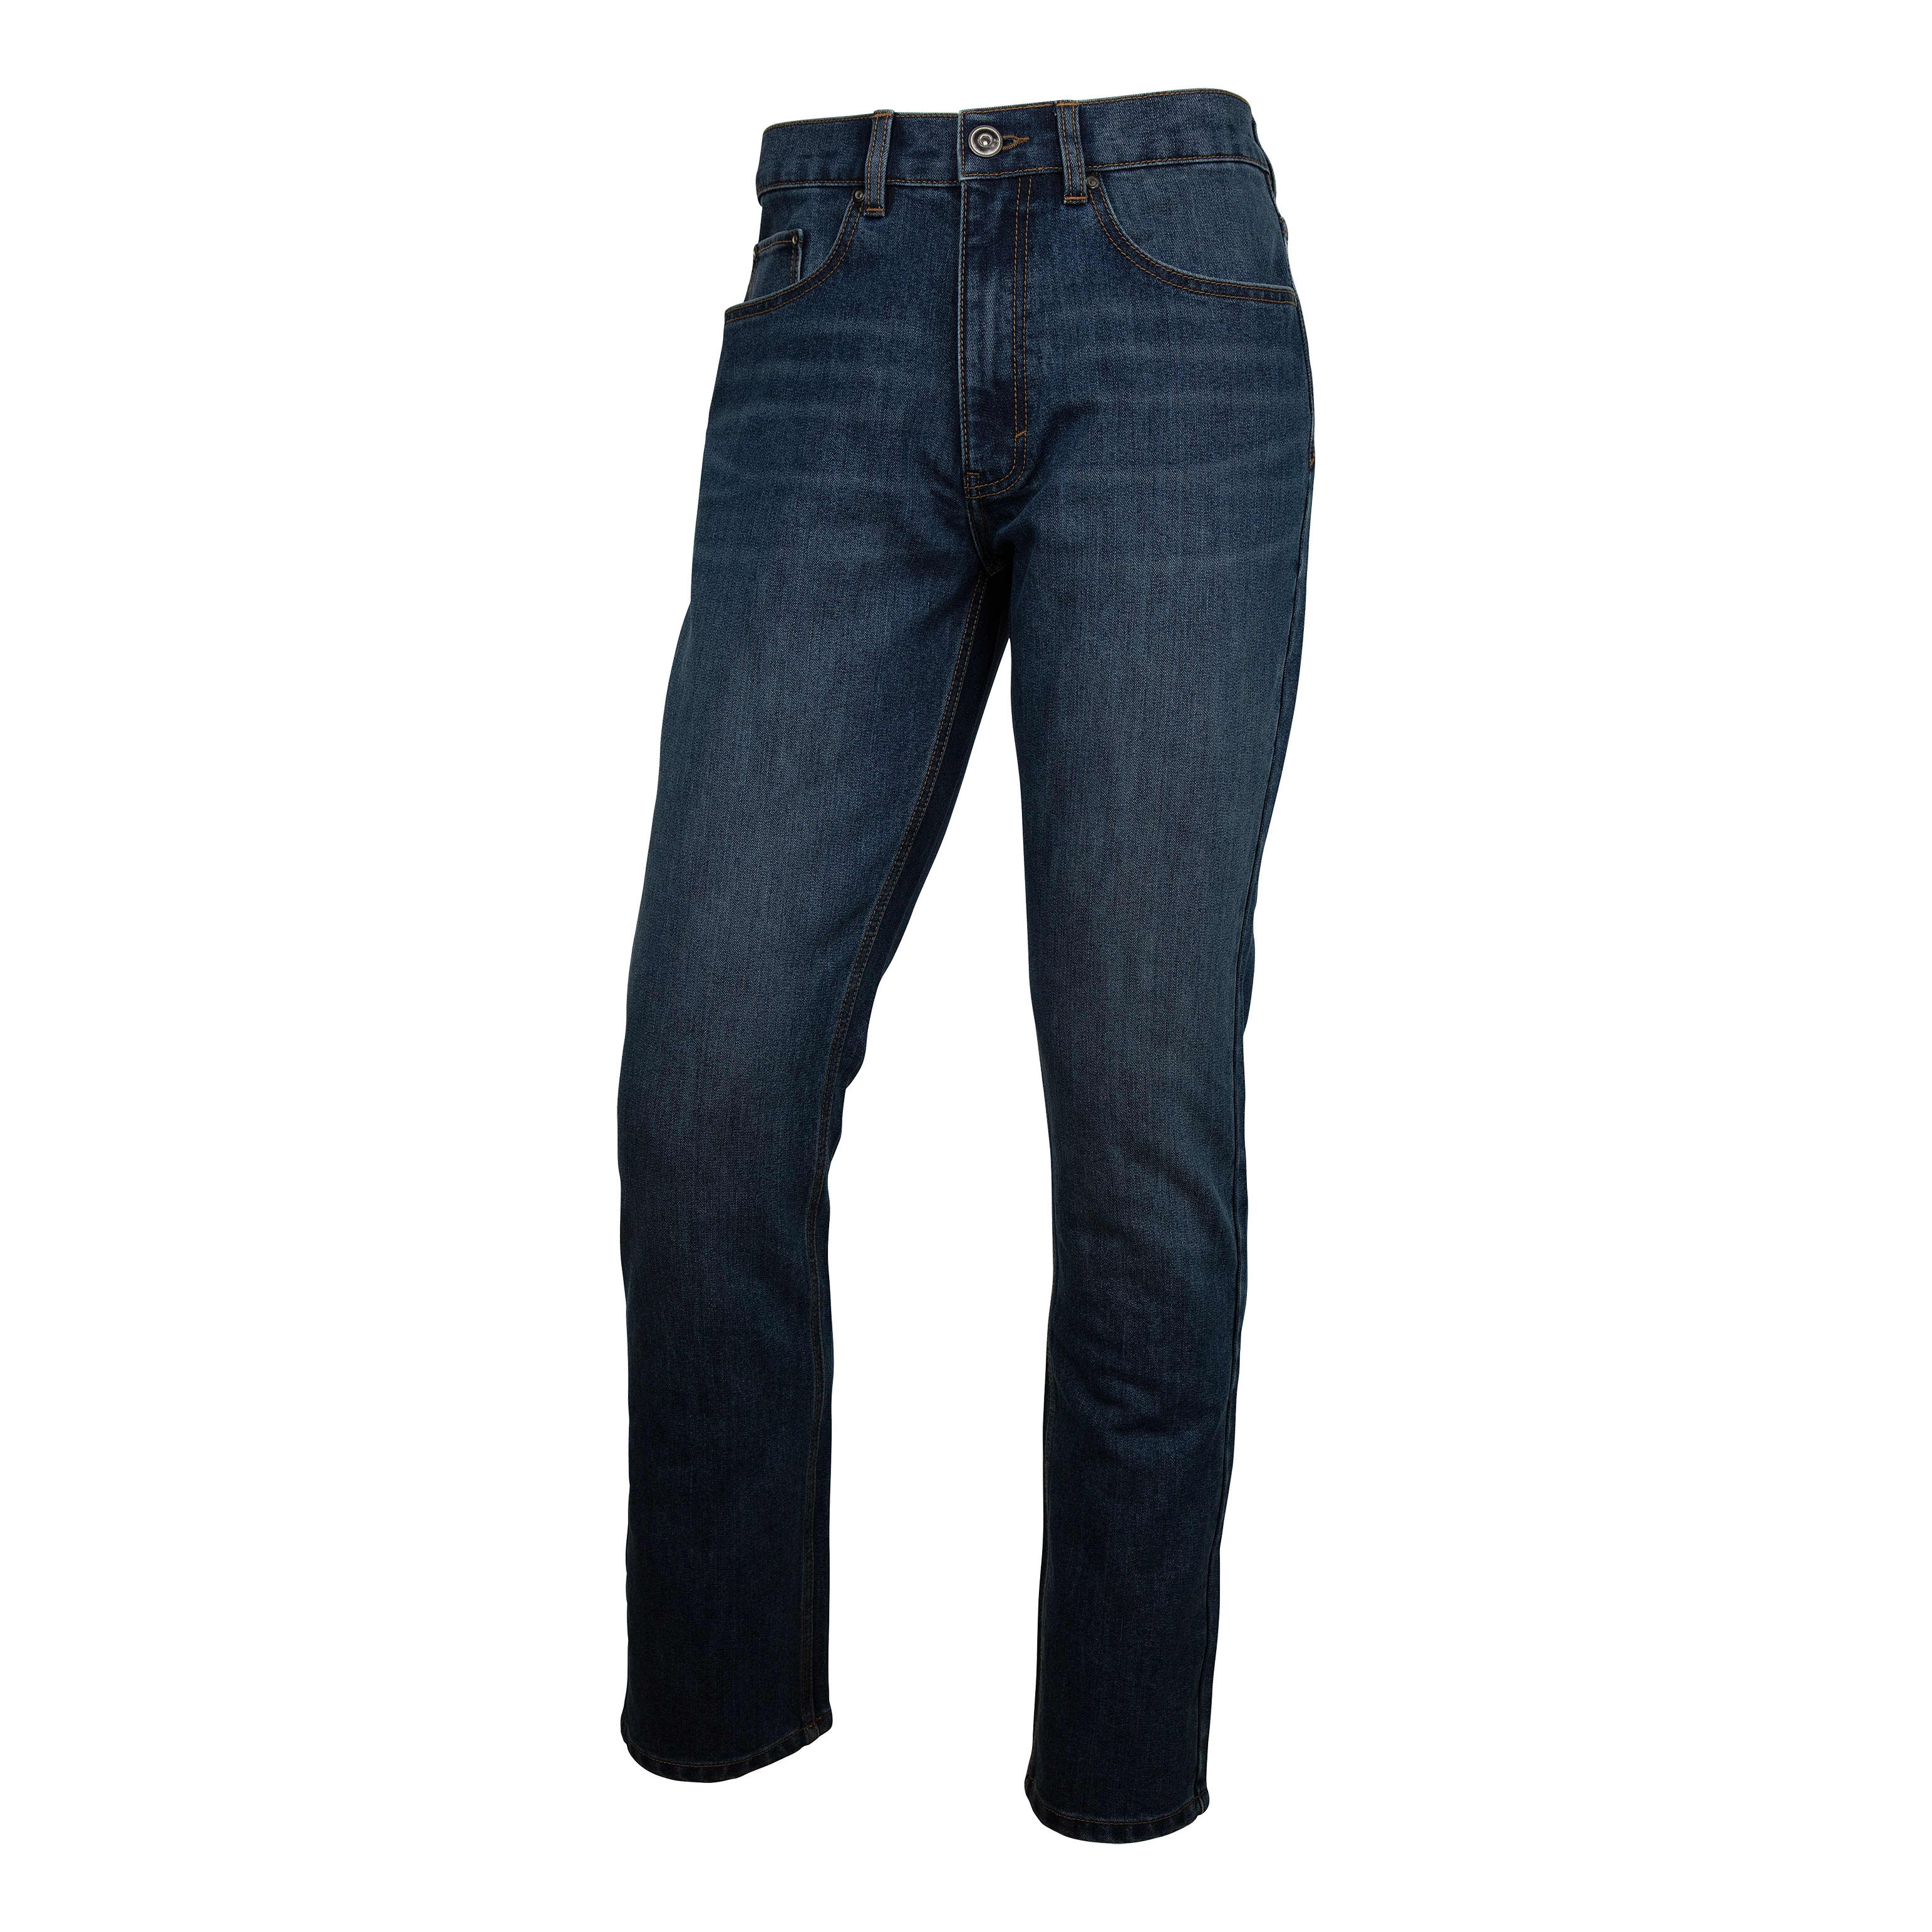 Cabela's Mens Red Flannel Lined Jeans Medium Wash Blue Denim 24x28